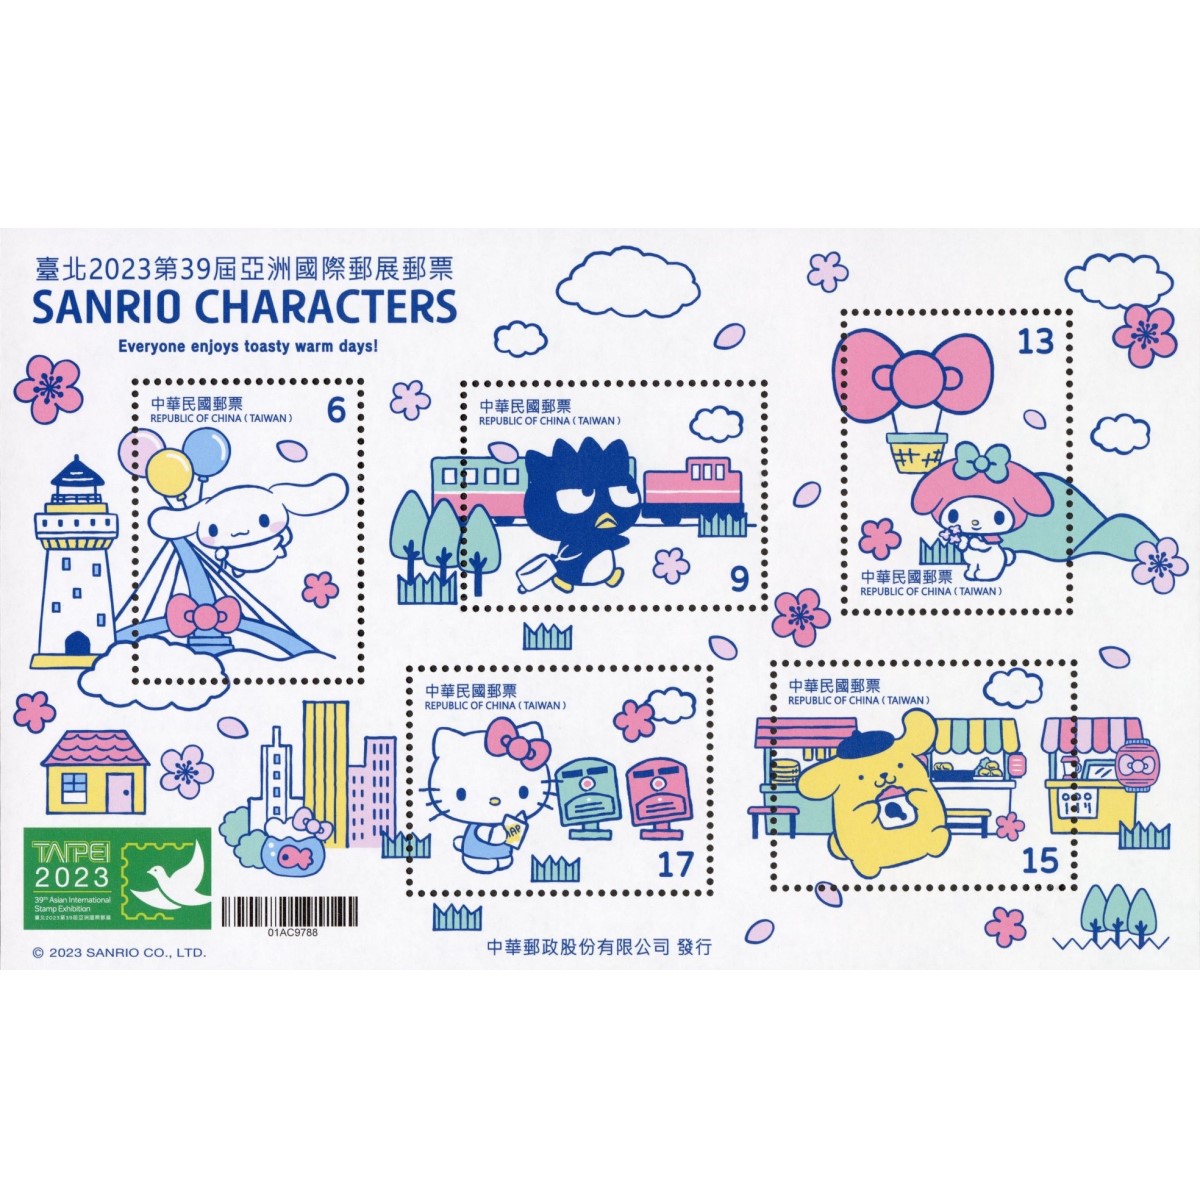 商品名稱_臺北2023第39屆亞洲國際郵展郵票小全張—SANRIO CHARACTERS (B款)